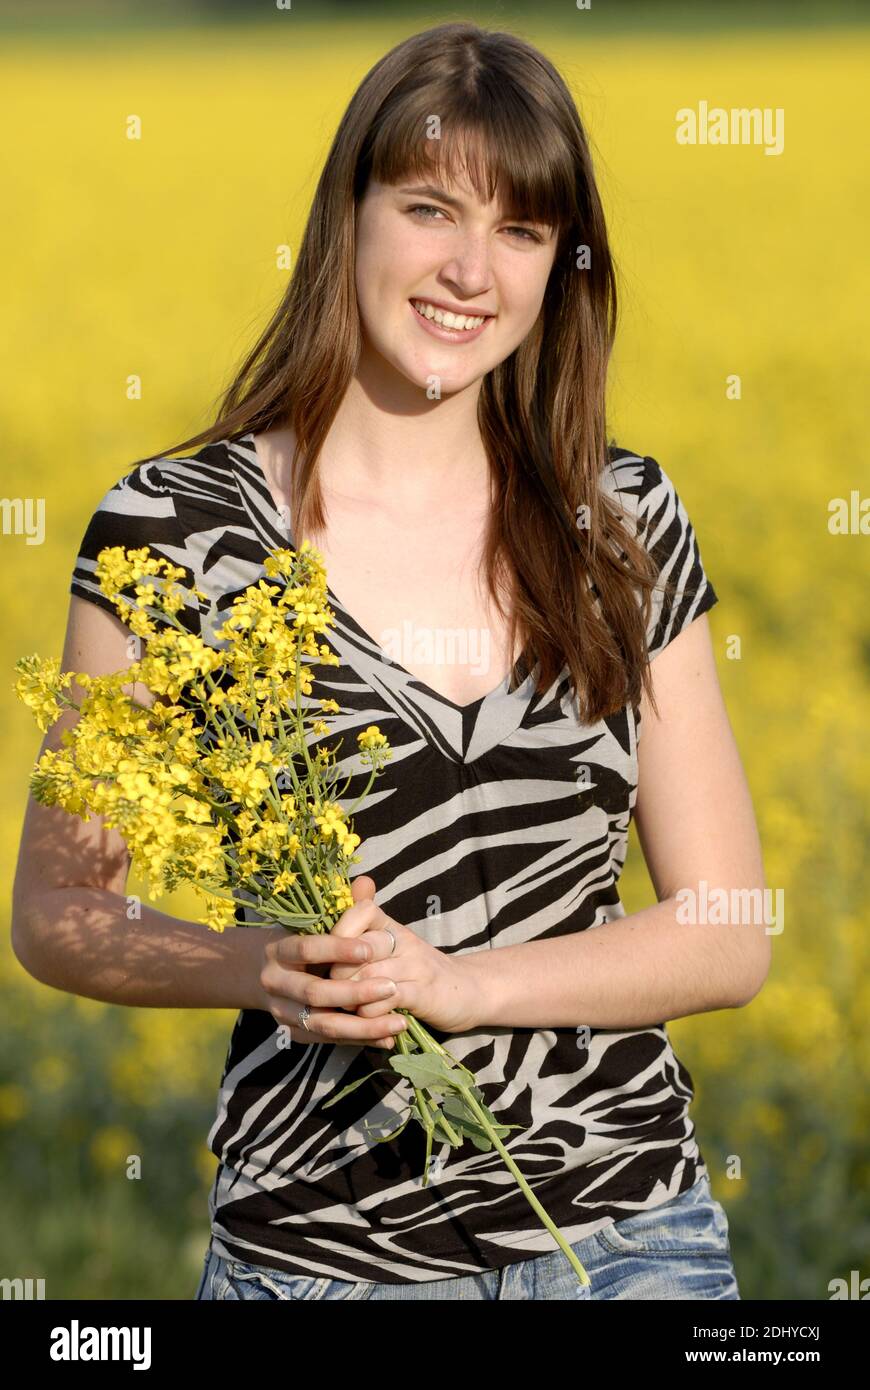 Junge Frau hält einen Blumenstrauss in der Hand Stock Photo